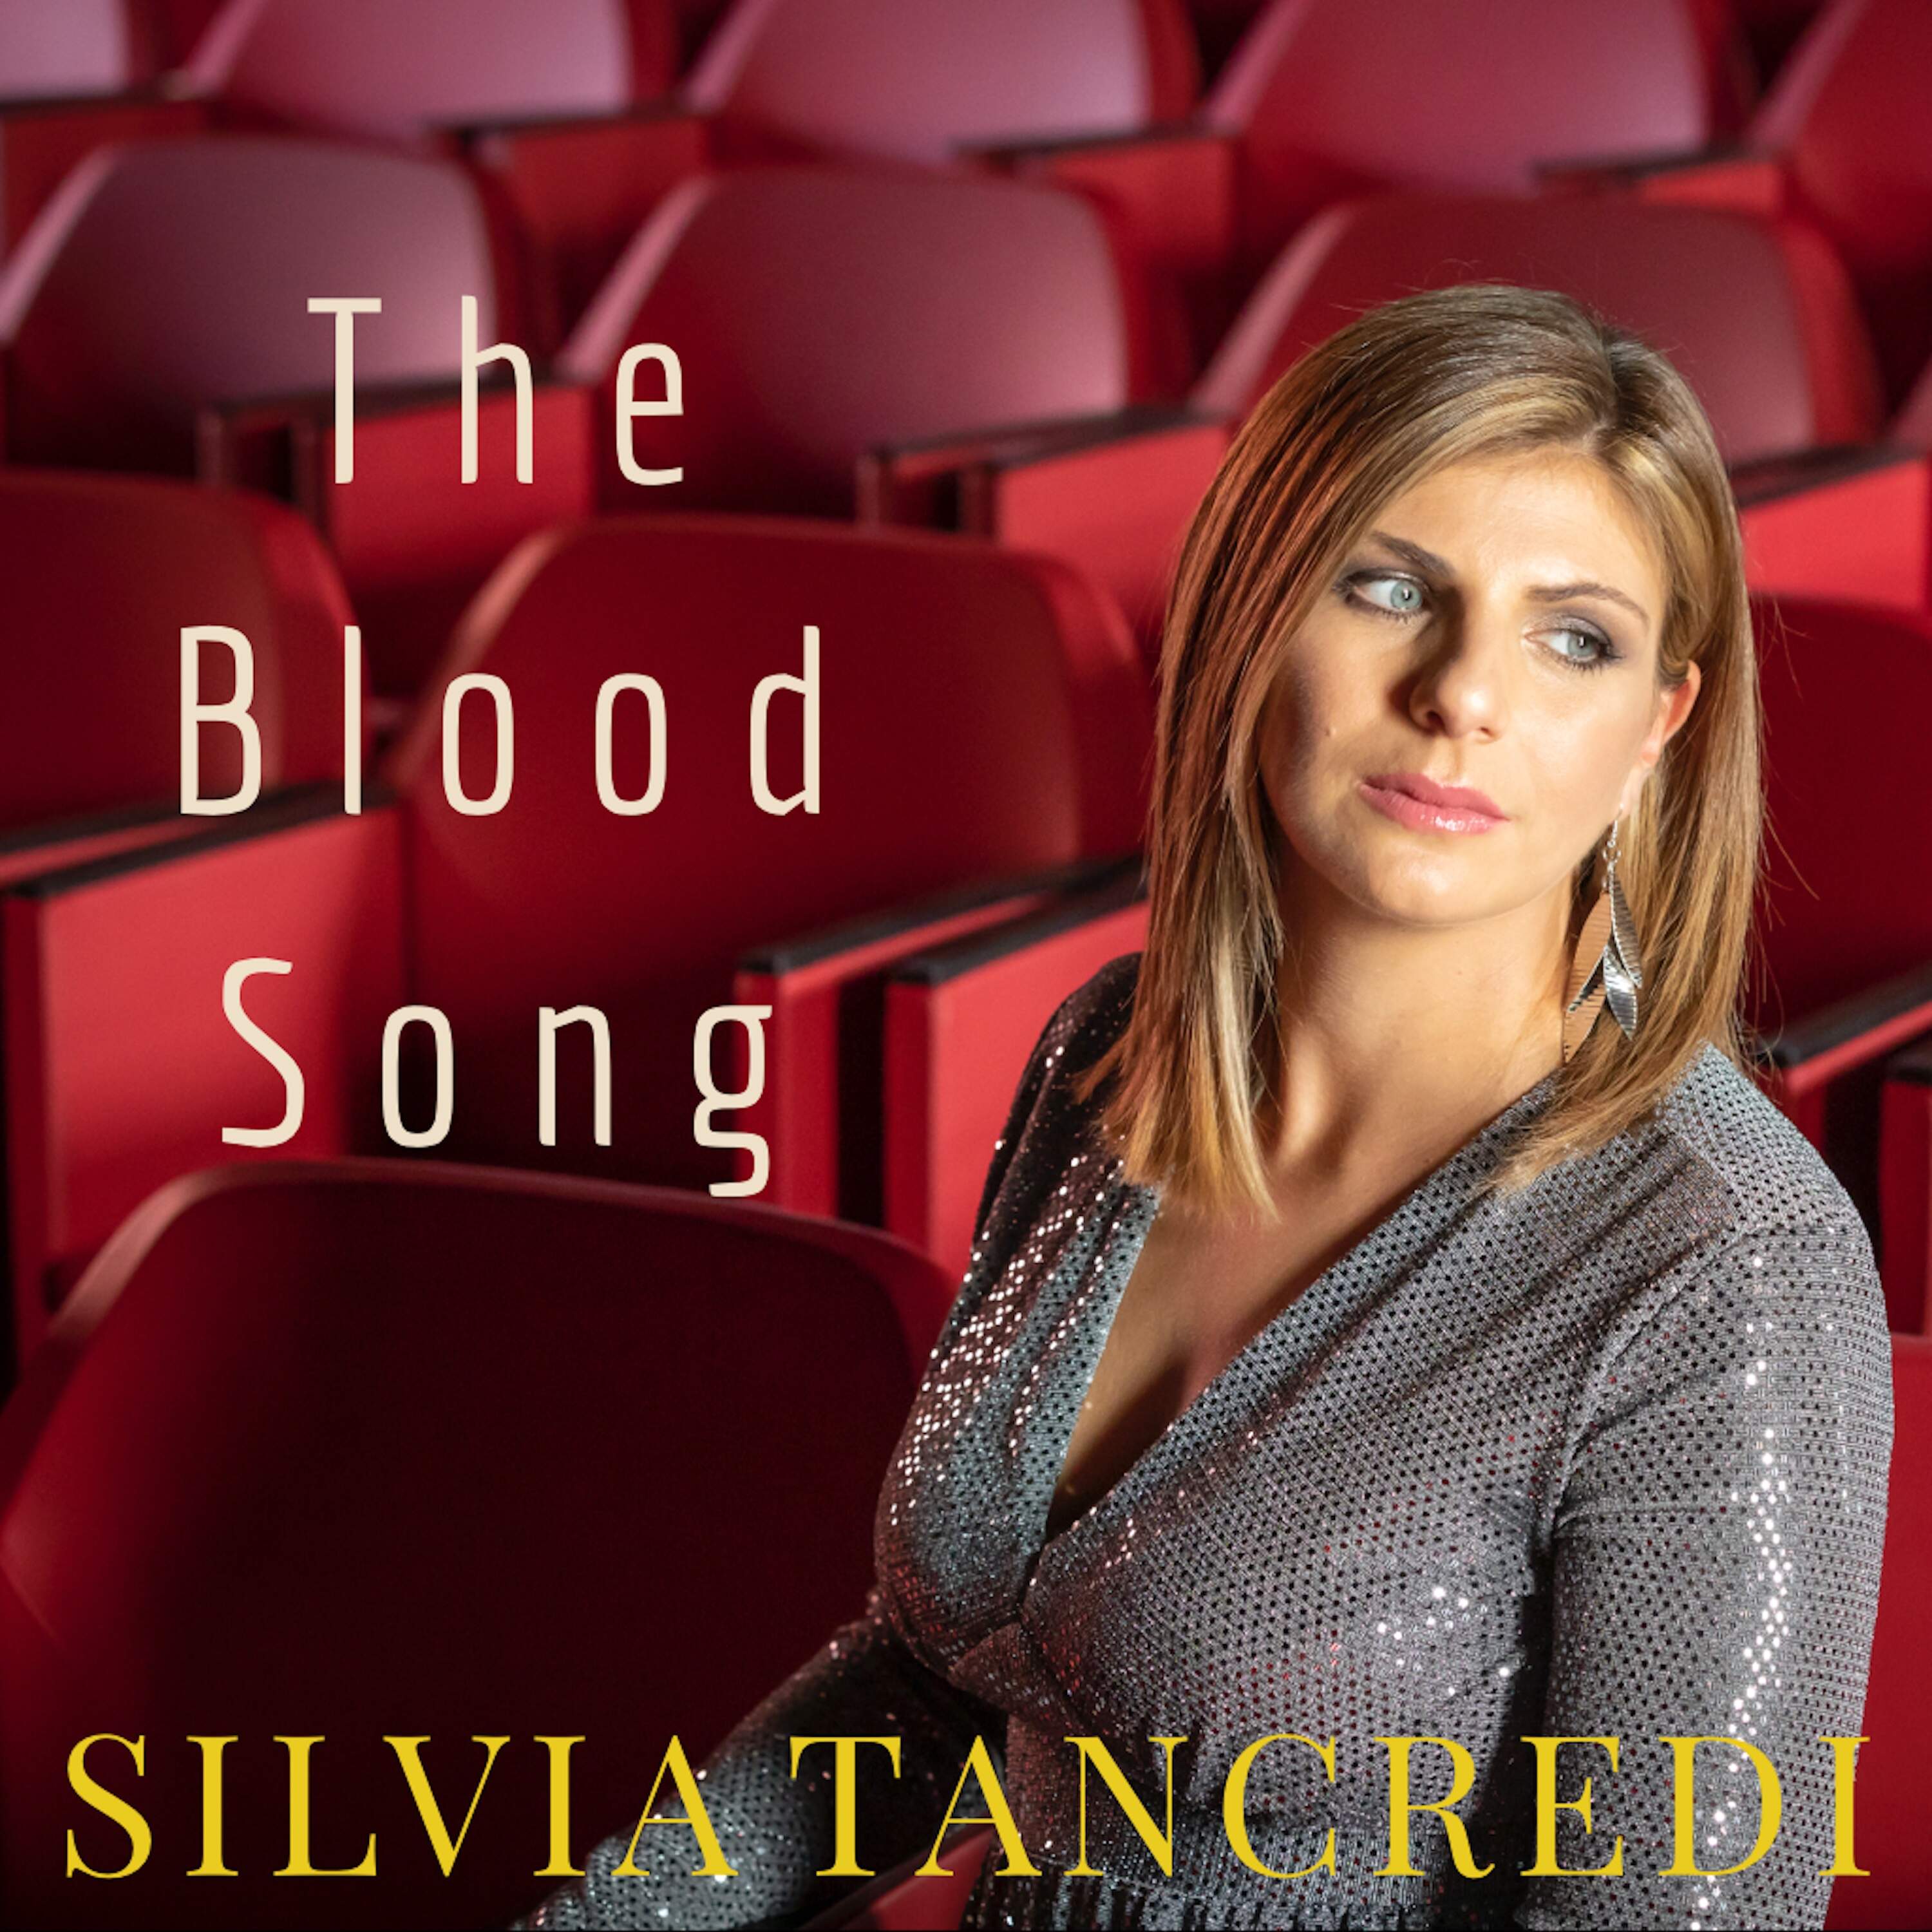 SILVIA TANCREDI CELEBRA LE FESTE CON LA COVER THE BLOOD SONG